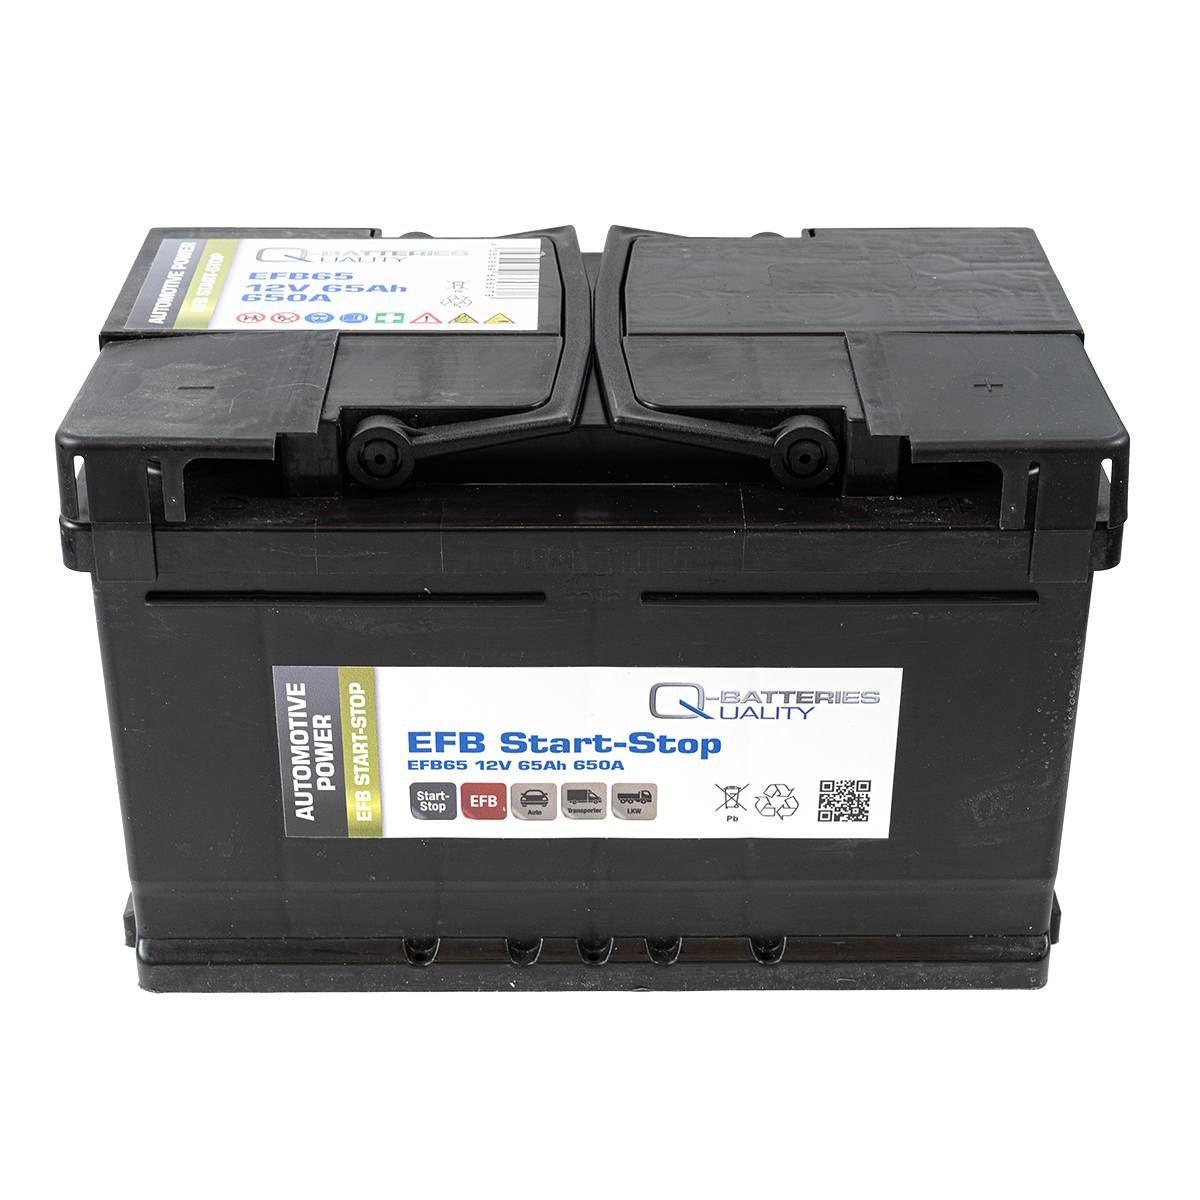 Q-Batteries Start-Stop EFB Autobatterie EFB65 12V 65Ah 650A